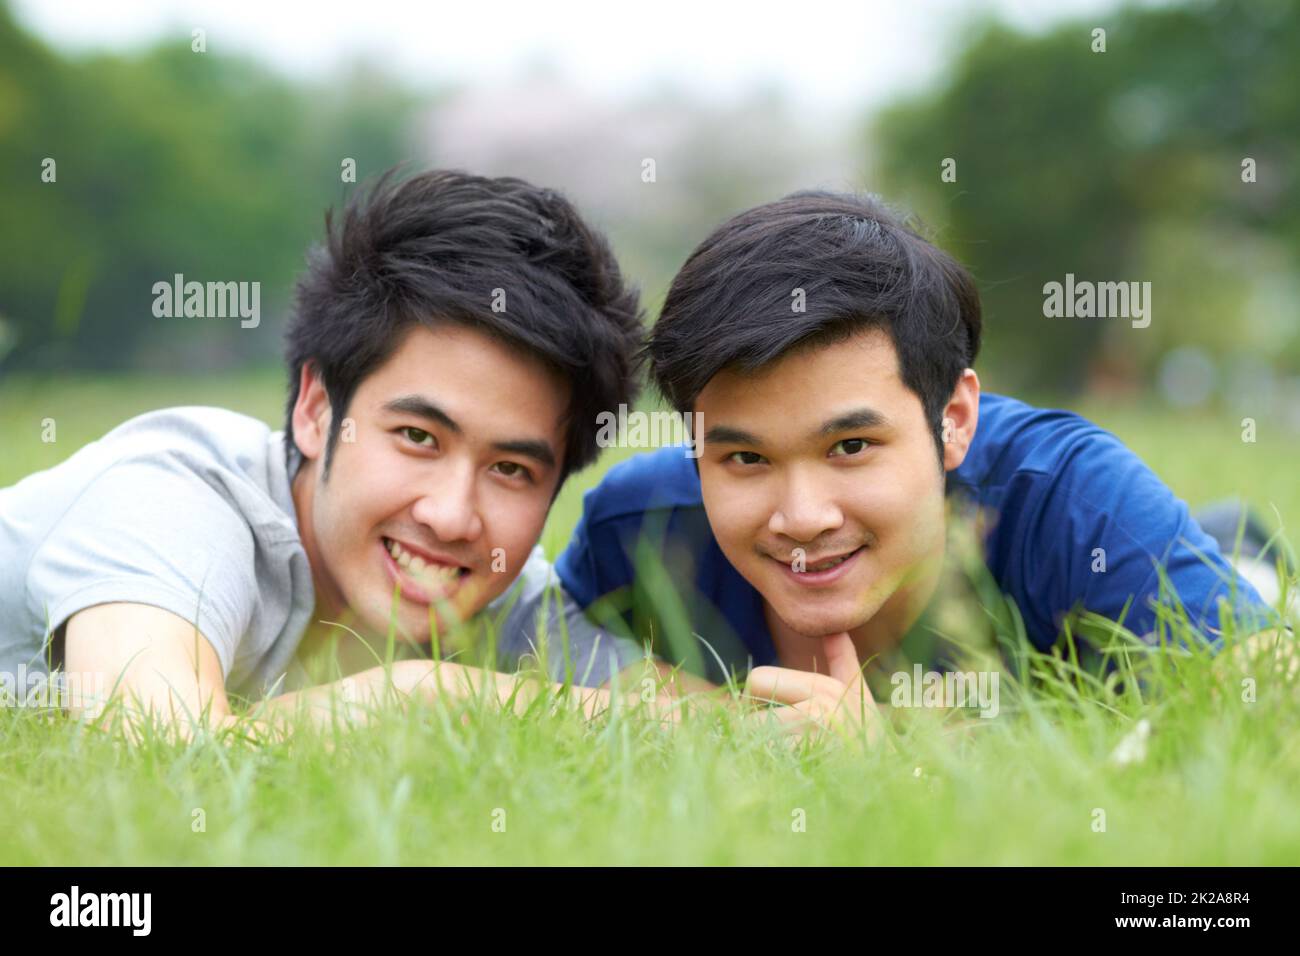 Ils partagent un amour du plein air. Mignon jeune couple asiatique gay souriant ensemble tout en étant allongé sur l'herbe. Banque D'Images